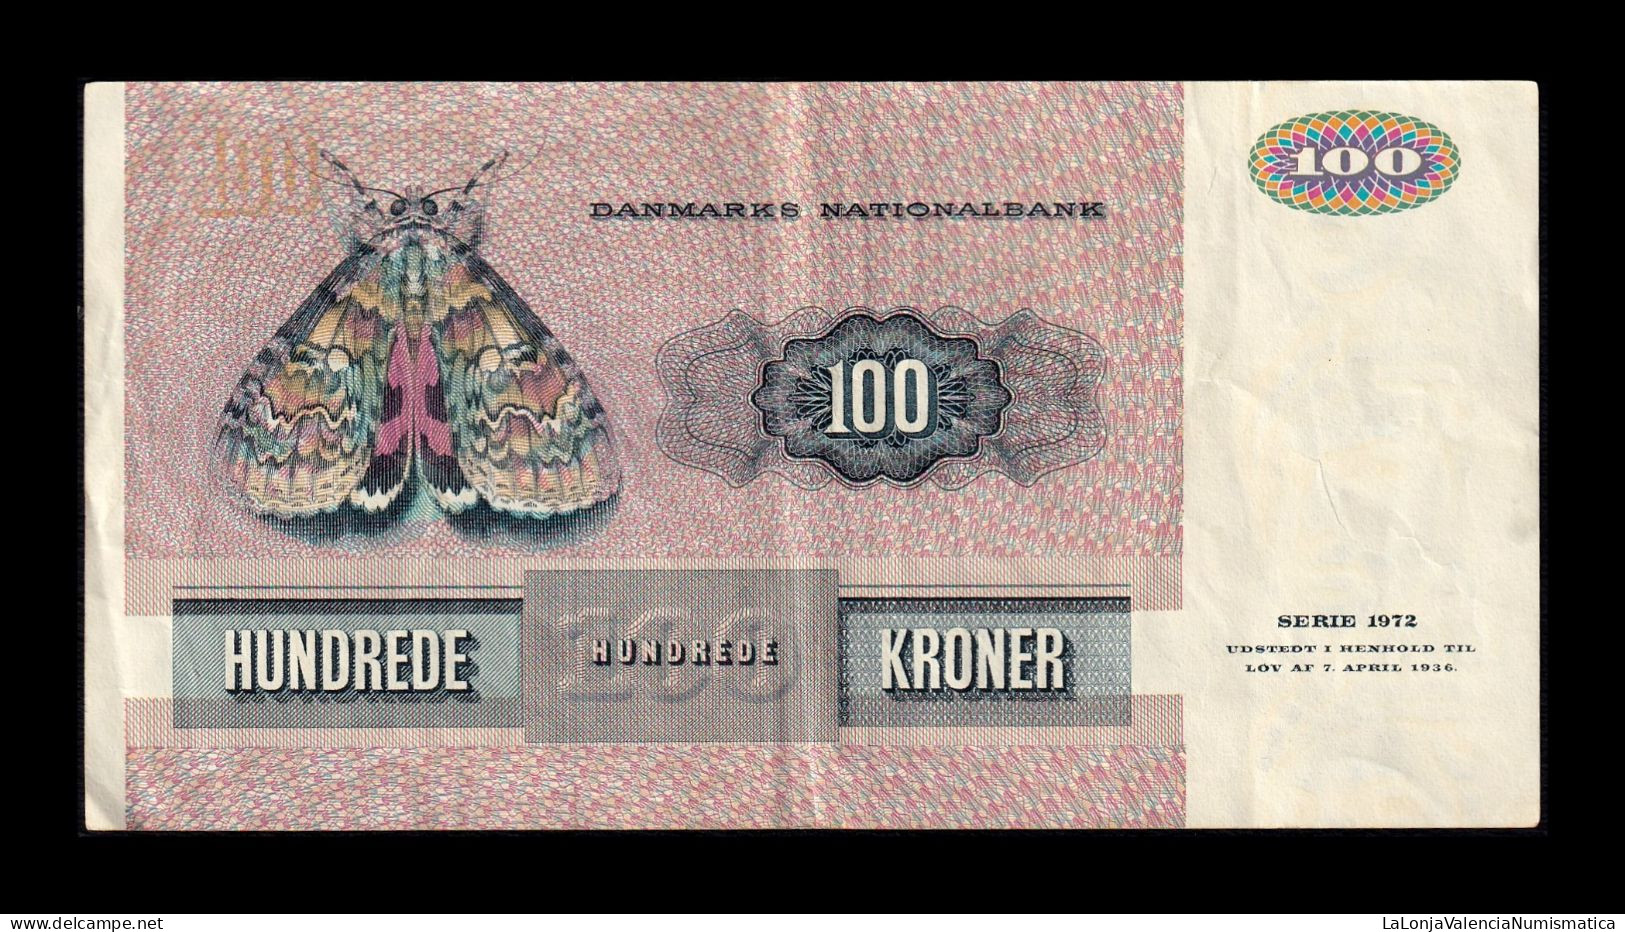 Dinamarca Denmark 100 Kroner 1990 Pick 51t Mbc Vf - Dänemark